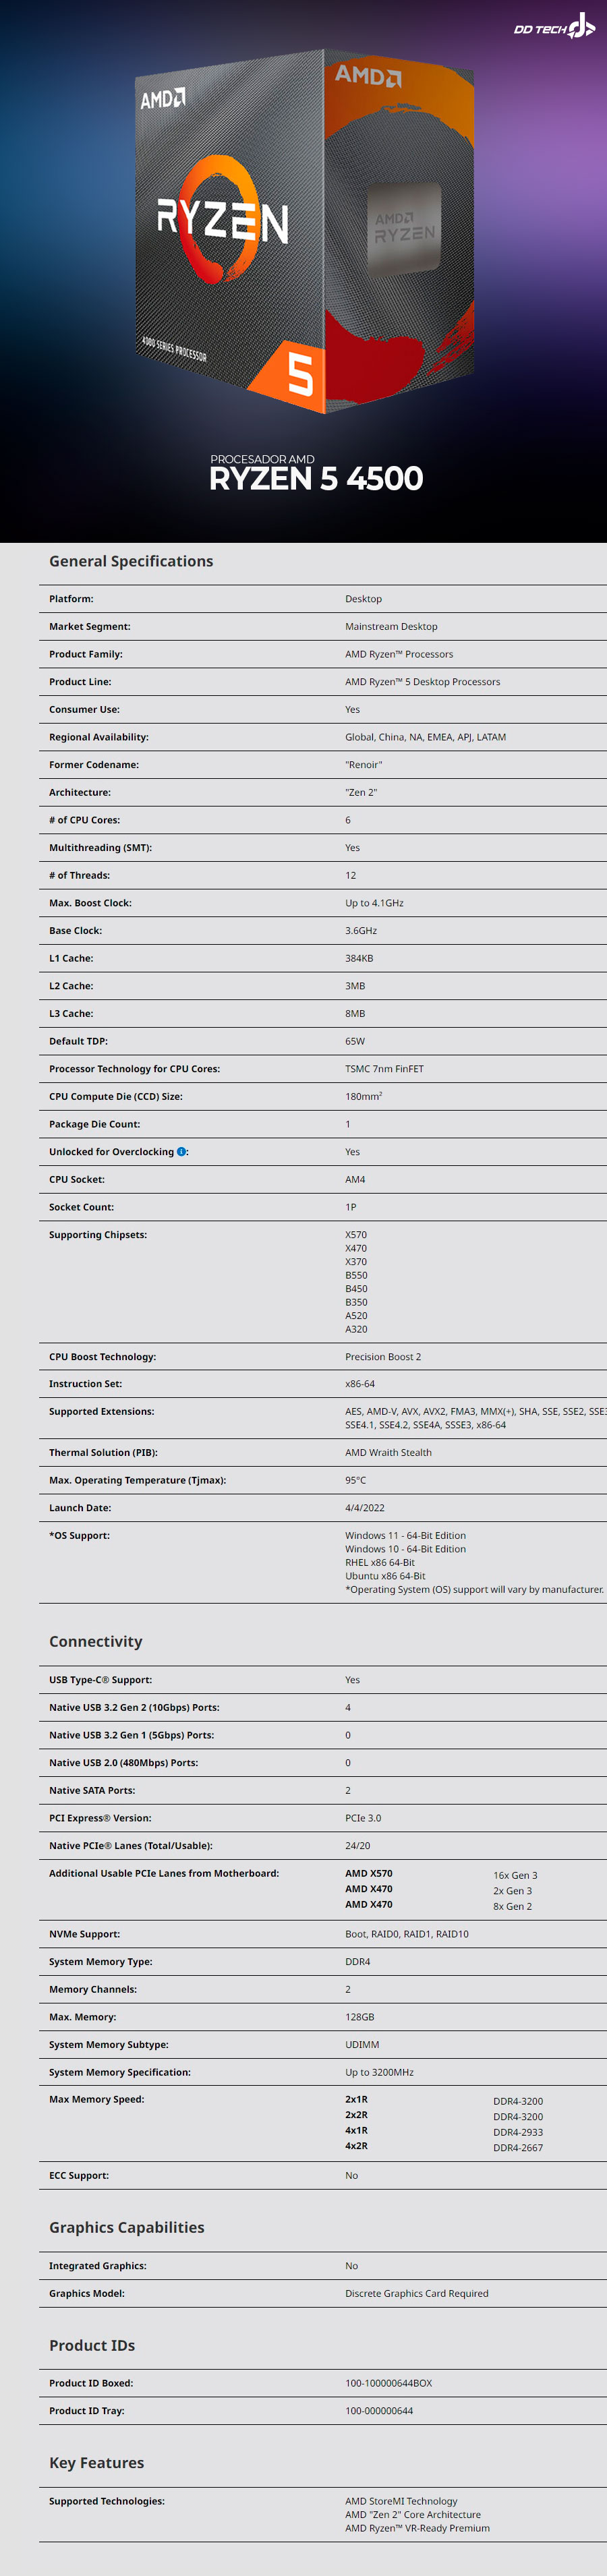 Procesador AMD Ryzen 5 4500 / 6 Core / 12 Thread / 3.6GHz / 4.1GHz Boost /  TDP 65W / Incluye Disipador Wraith Stealth / (Requiere Tarjeta de Video) /  100-100000644BOX